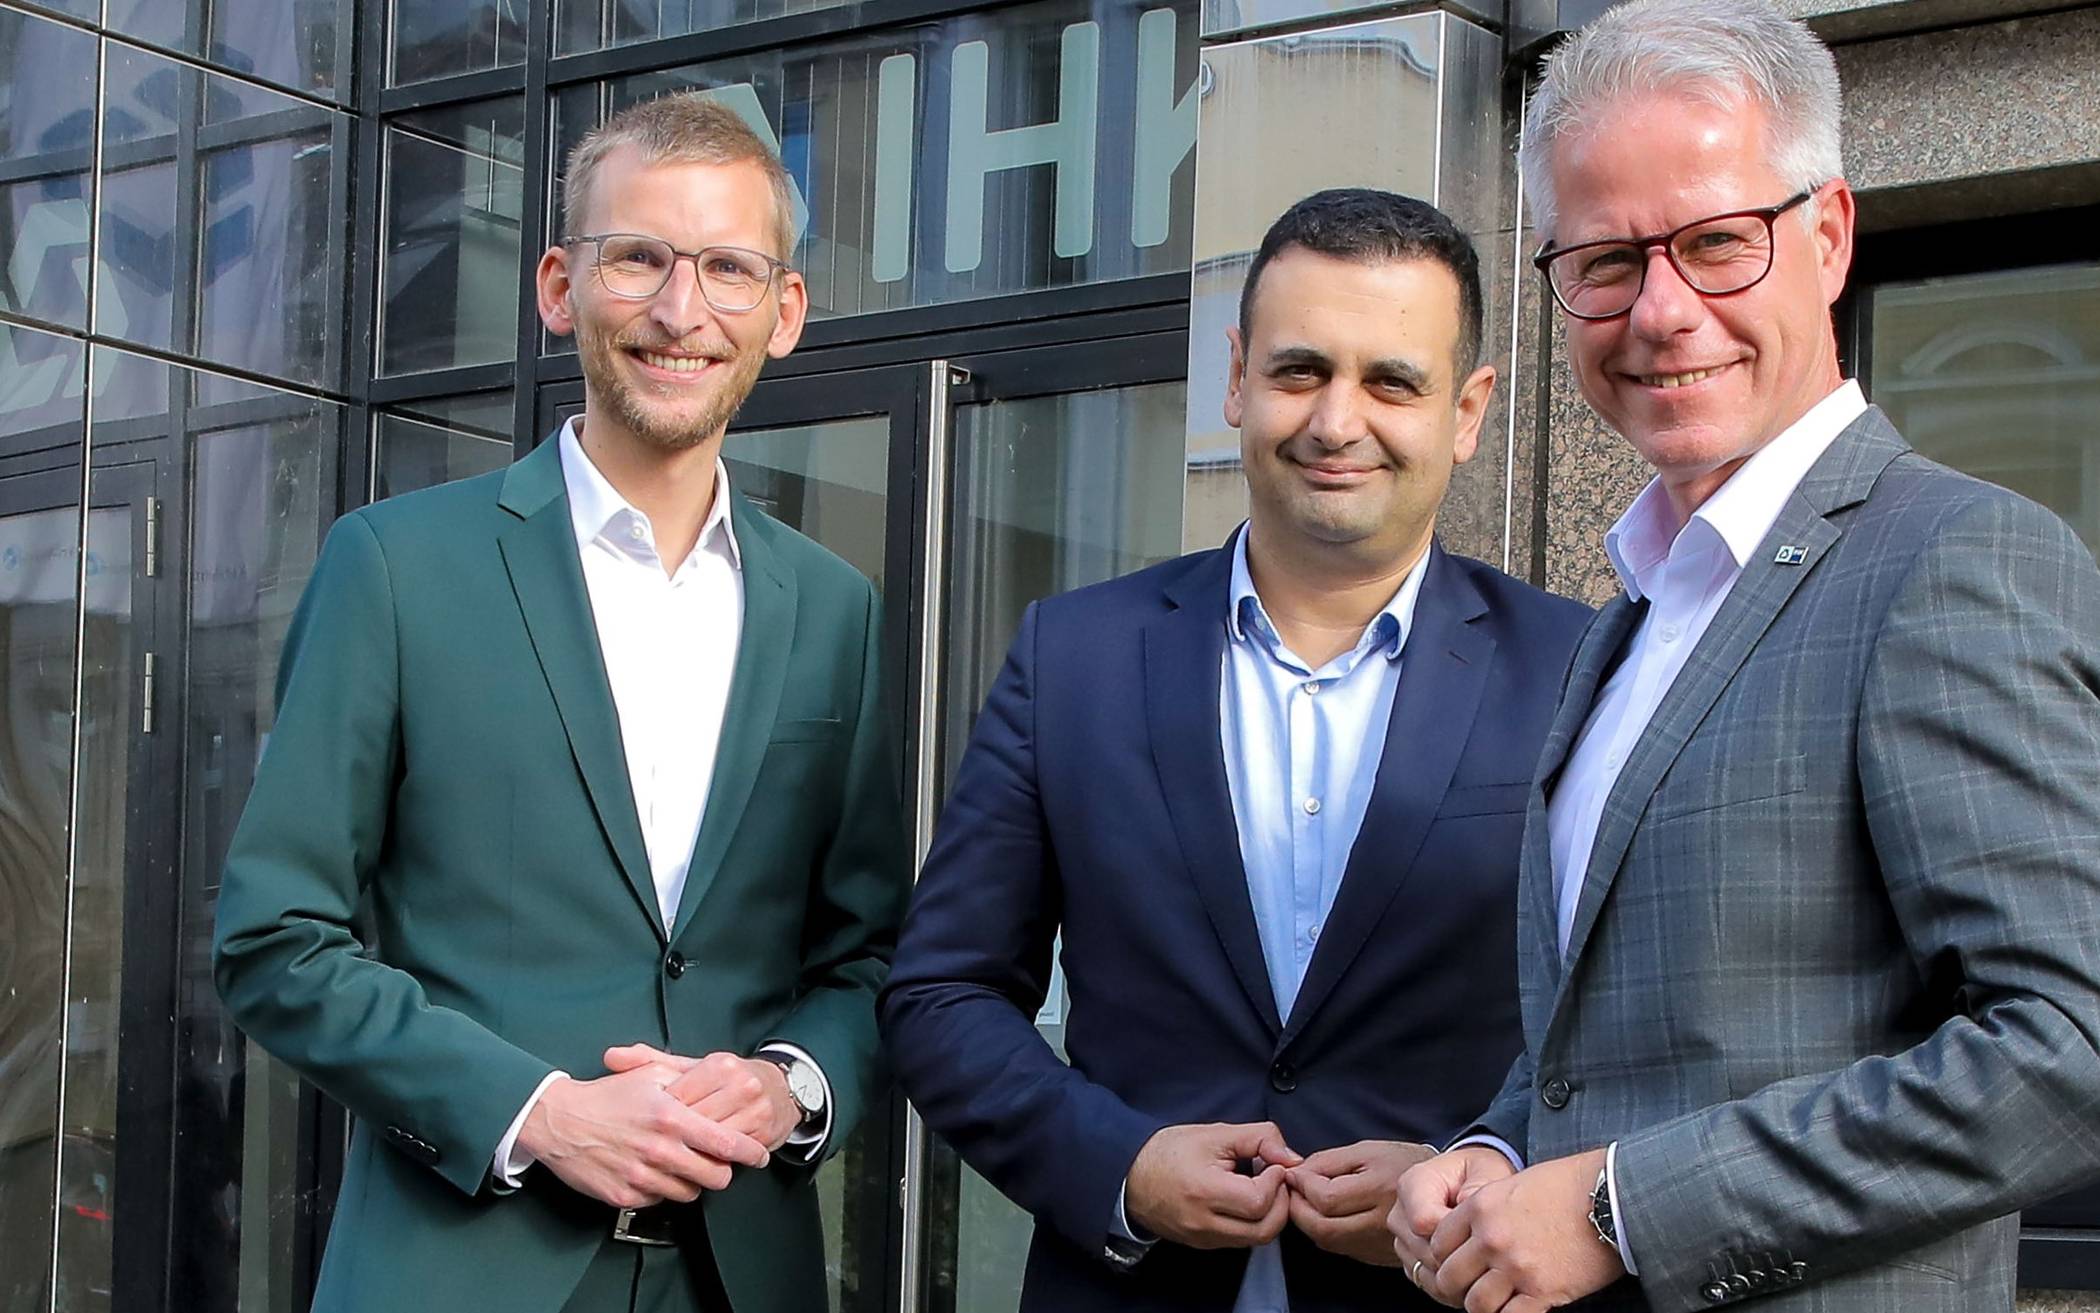  Sie tauschten sich über den Strukturwandel aus (von links): Die beiden Grevenbroicher Bundestags-Abgeordneten Daniel Rinkert (SPD) und Bijan Djir-Sarai (FDP) sowie Jürgen Steinmetz, Hauptgeschäftsführer der Industrie- und Handelskammer. 